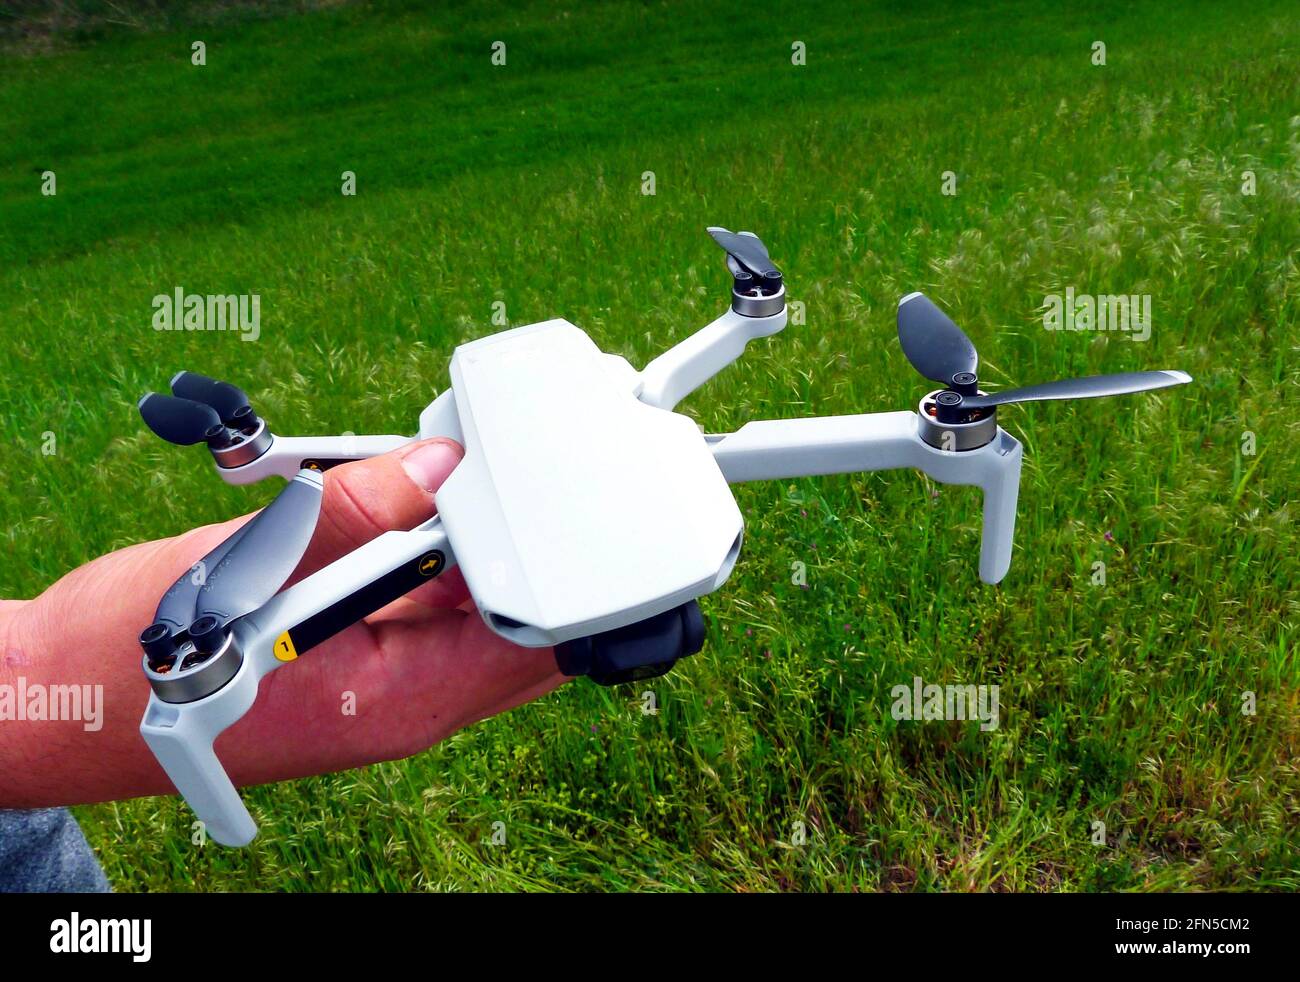 Kleine weiße Kamera-Drohne in männlicher Hand gehalten. Schwarze Propeller. Nahaufnahme. Noch bewegungslose Propeller. Technologie und Luftaufnahmen Stockfoto